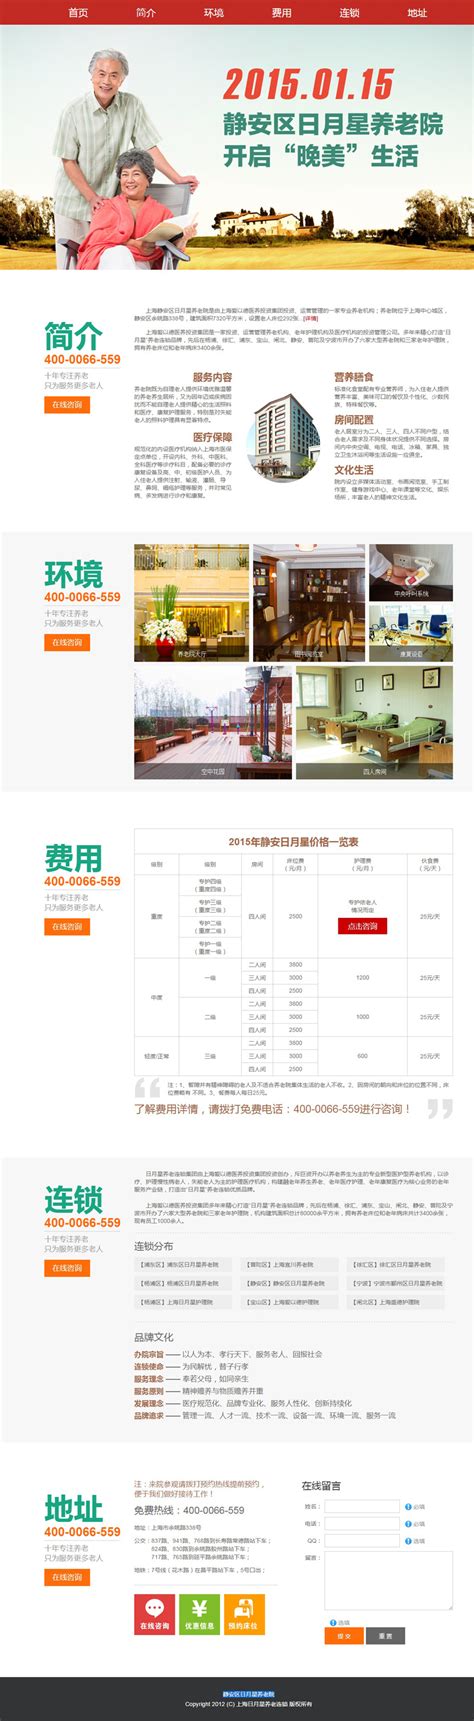 上海静安区日月星养老院网页设计案例,医院页面设计制作案例,医院医疗网站建设案例欣赏-海淘科技